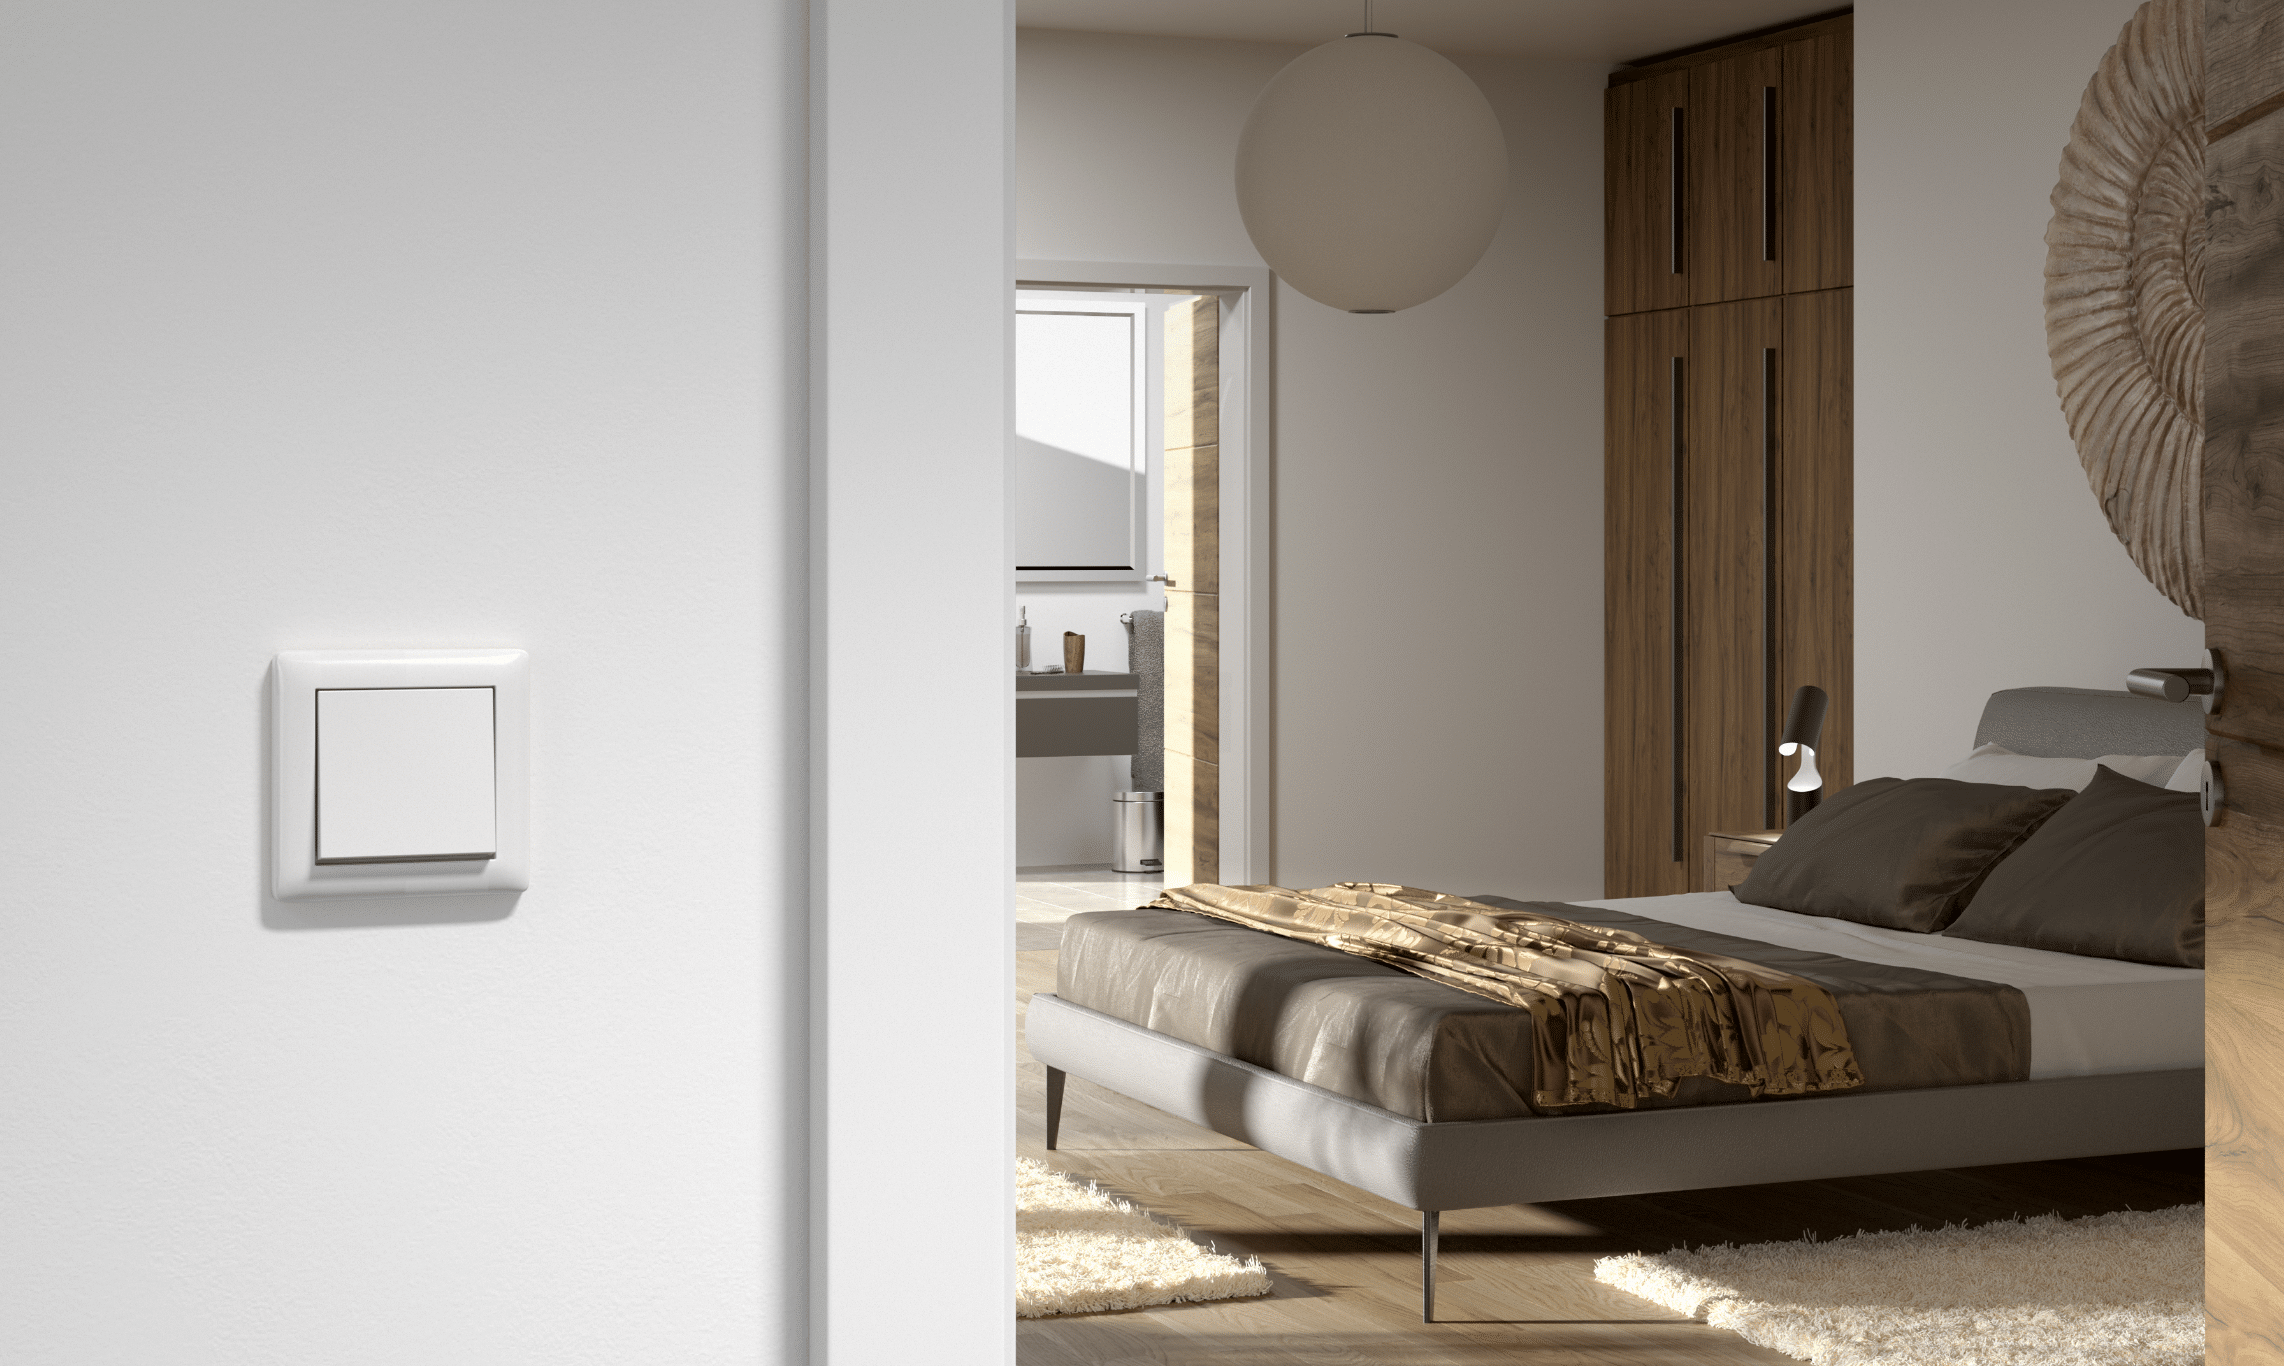 Gira zeigt einen weissen Wipptaster an einer Wand zum Schlafzimmer mit grauem Doppelbett, weissen hochflorigen Teppichen und einem Kleiderschrank aus Holz.